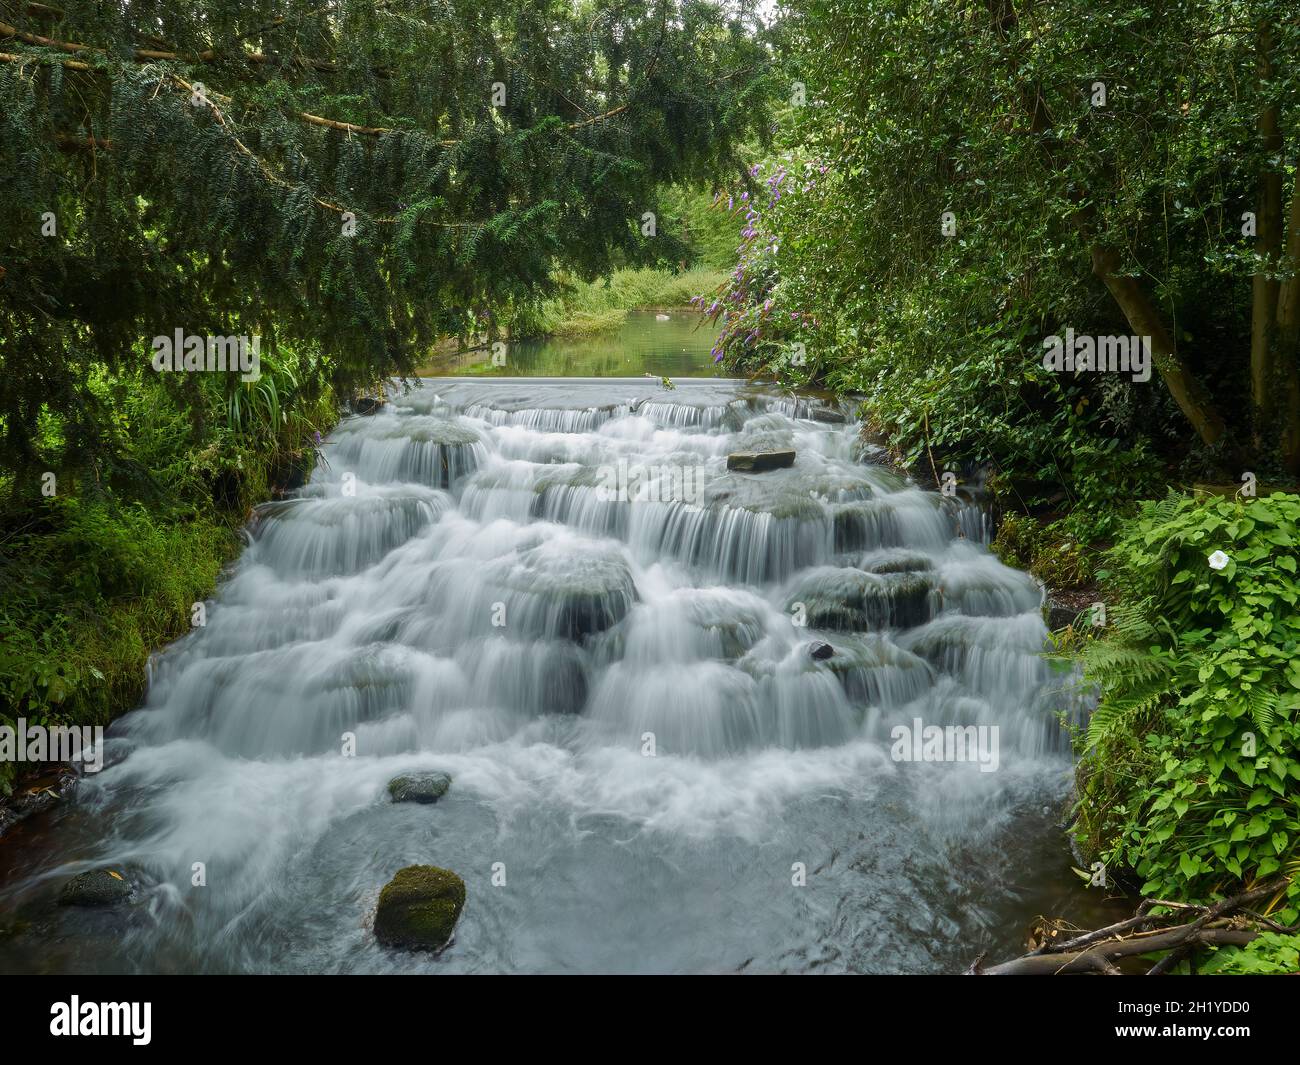 Una piccola cascata a più livelli circondata da alberi in un parco suburbano, presa con un otturatore lento per catturare la sussurrazione dell'acqua che cade. Foto Stock